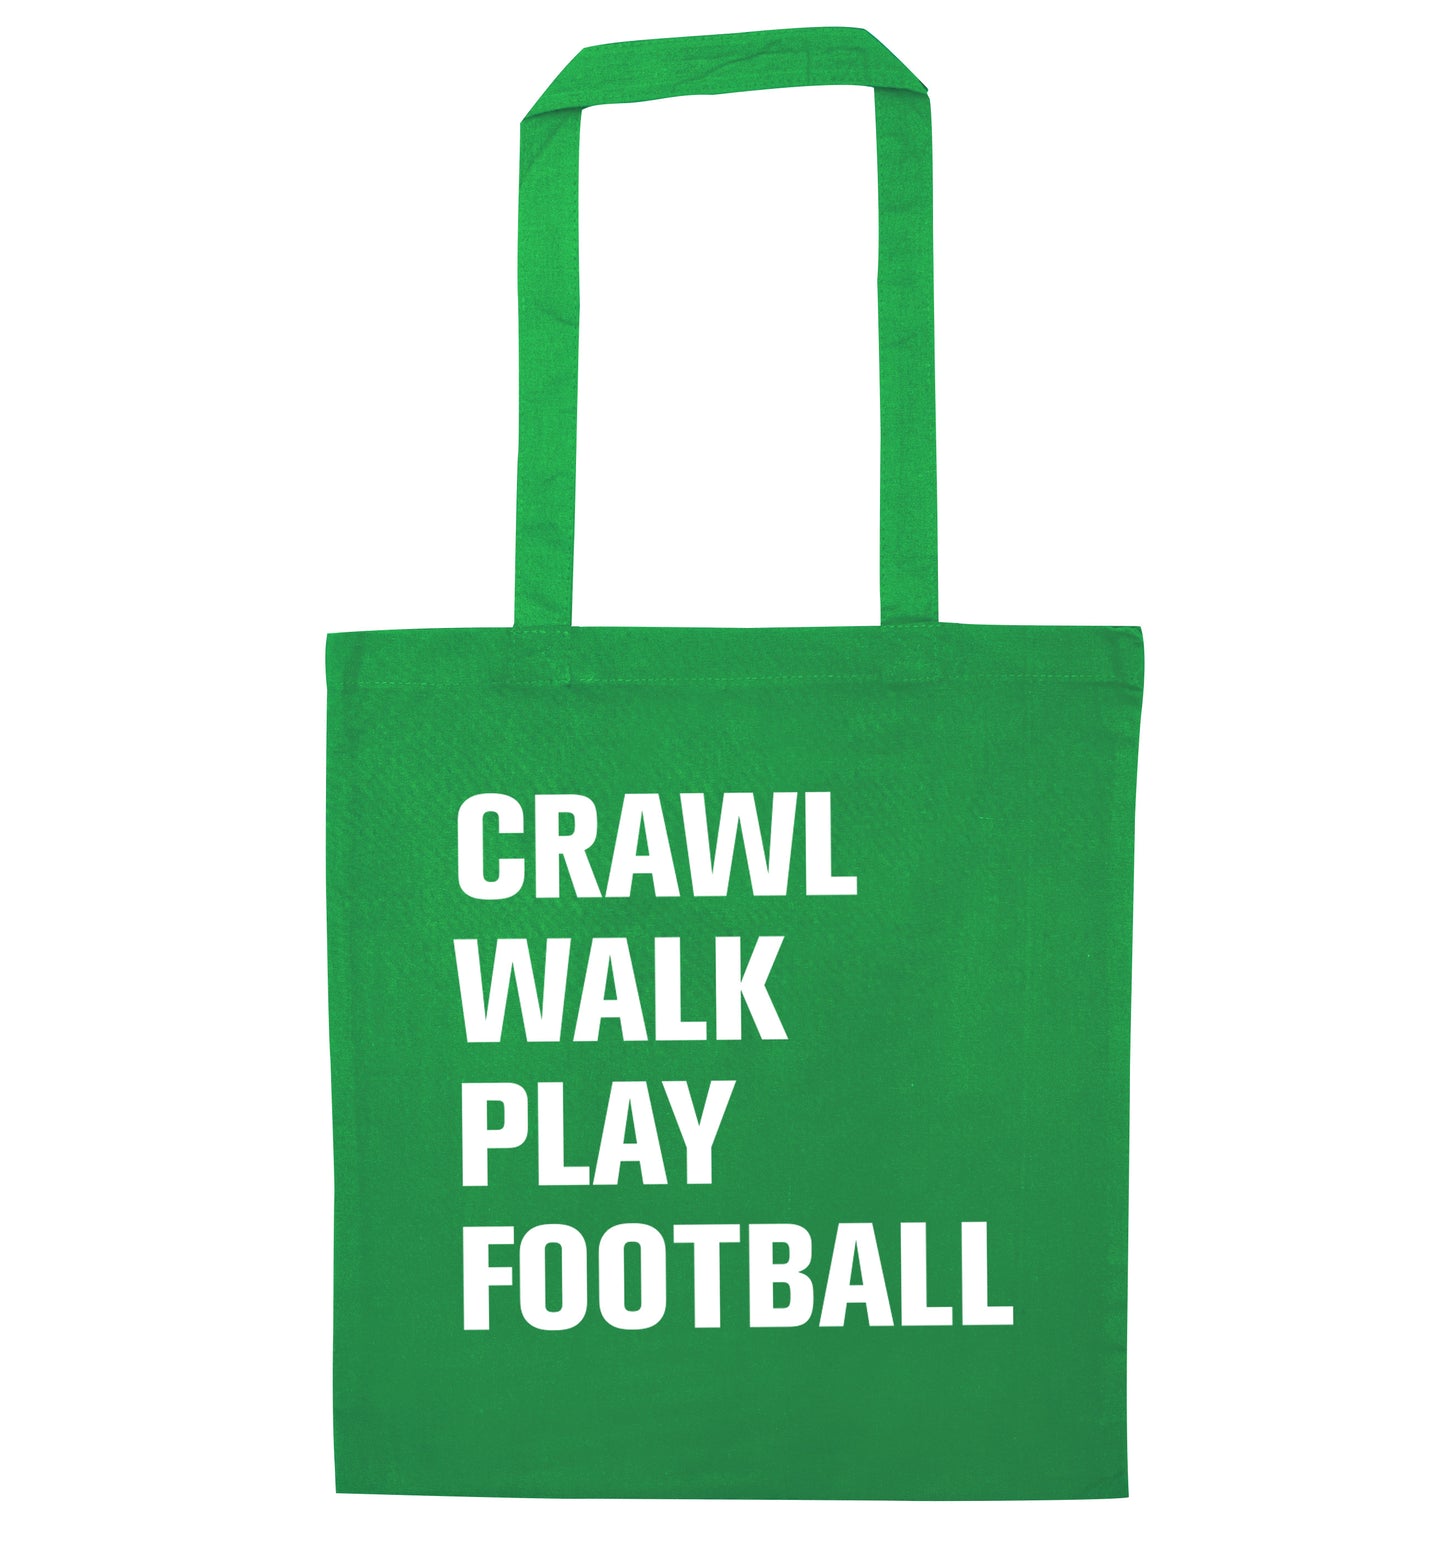 Crawl, walk, play football green tote bag